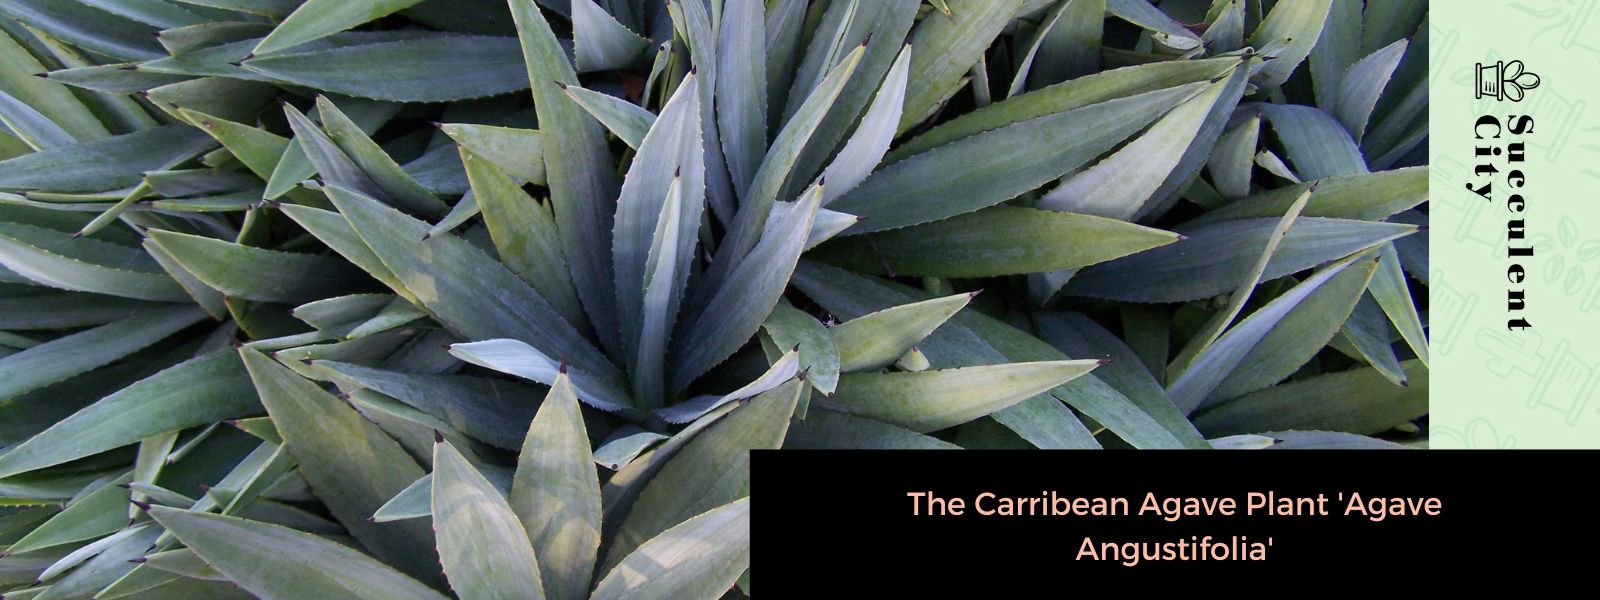 La planta de agave caribeño 'Agave Angustifolia'